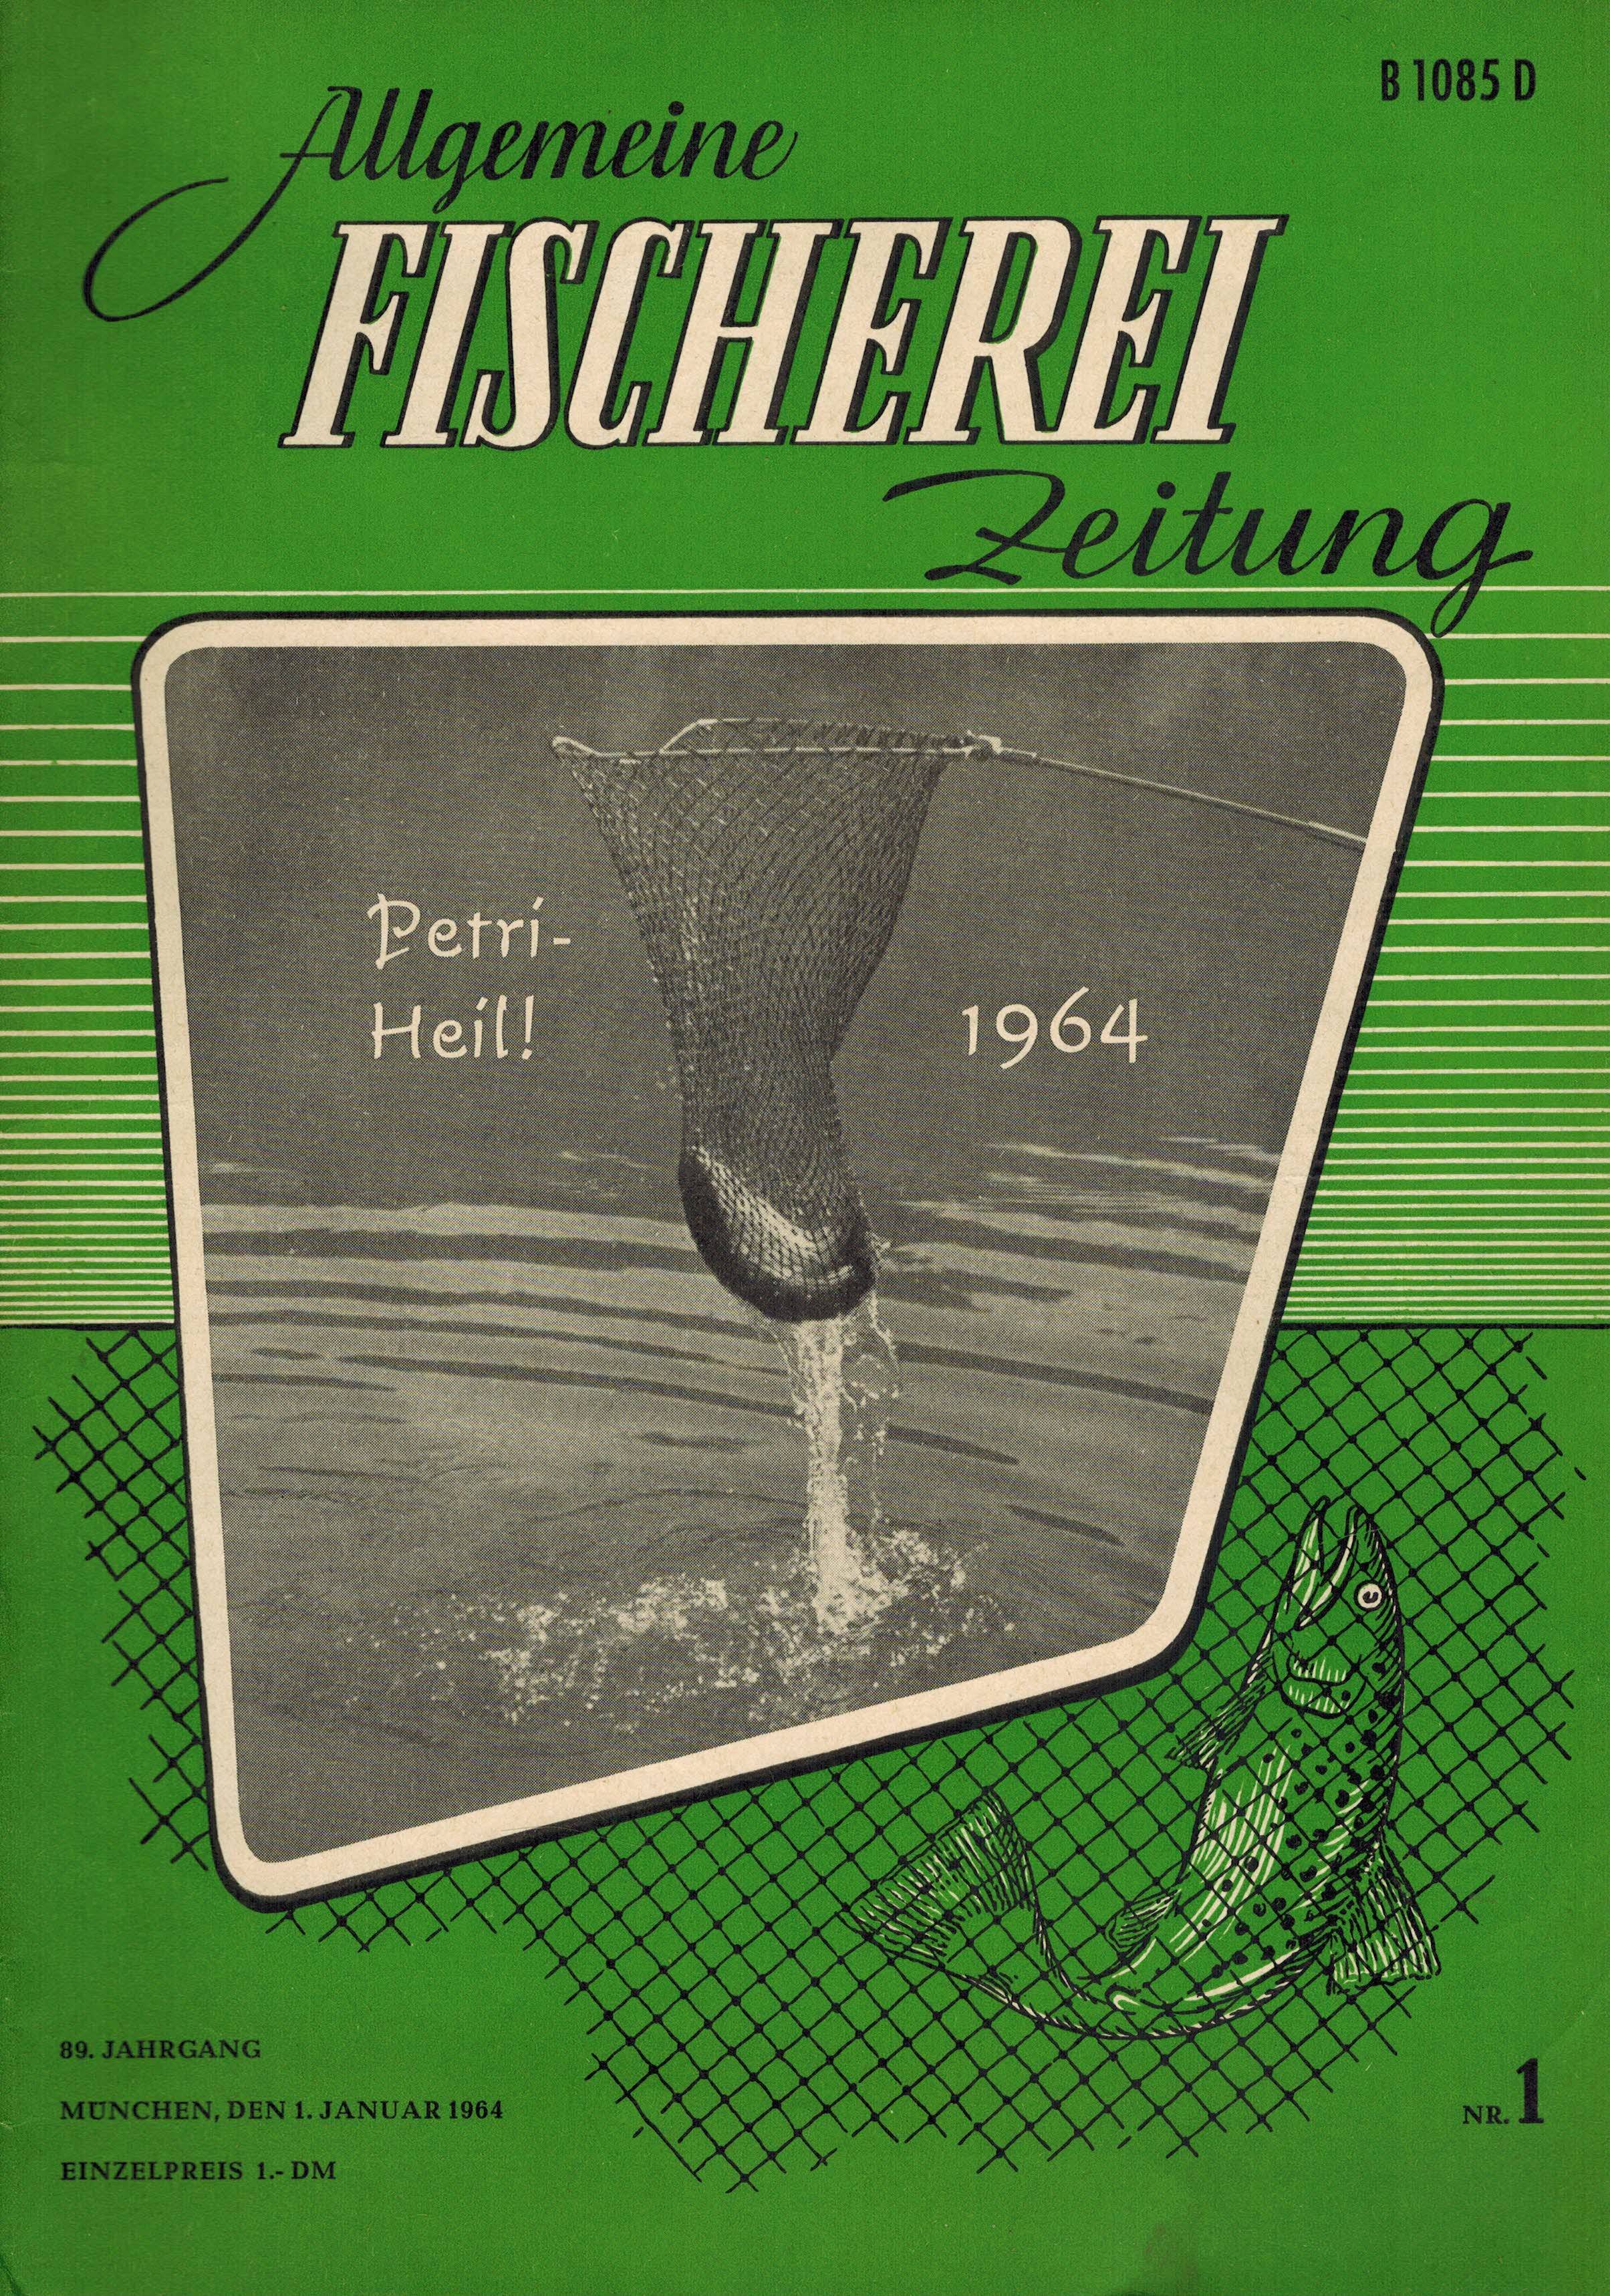 Allgemeine Fischerei-Zeitung  Allgemeine Fischerei-Zeitung 89.Jahrgang 1964 (Heft 7 fehlt) 23 Hefte 